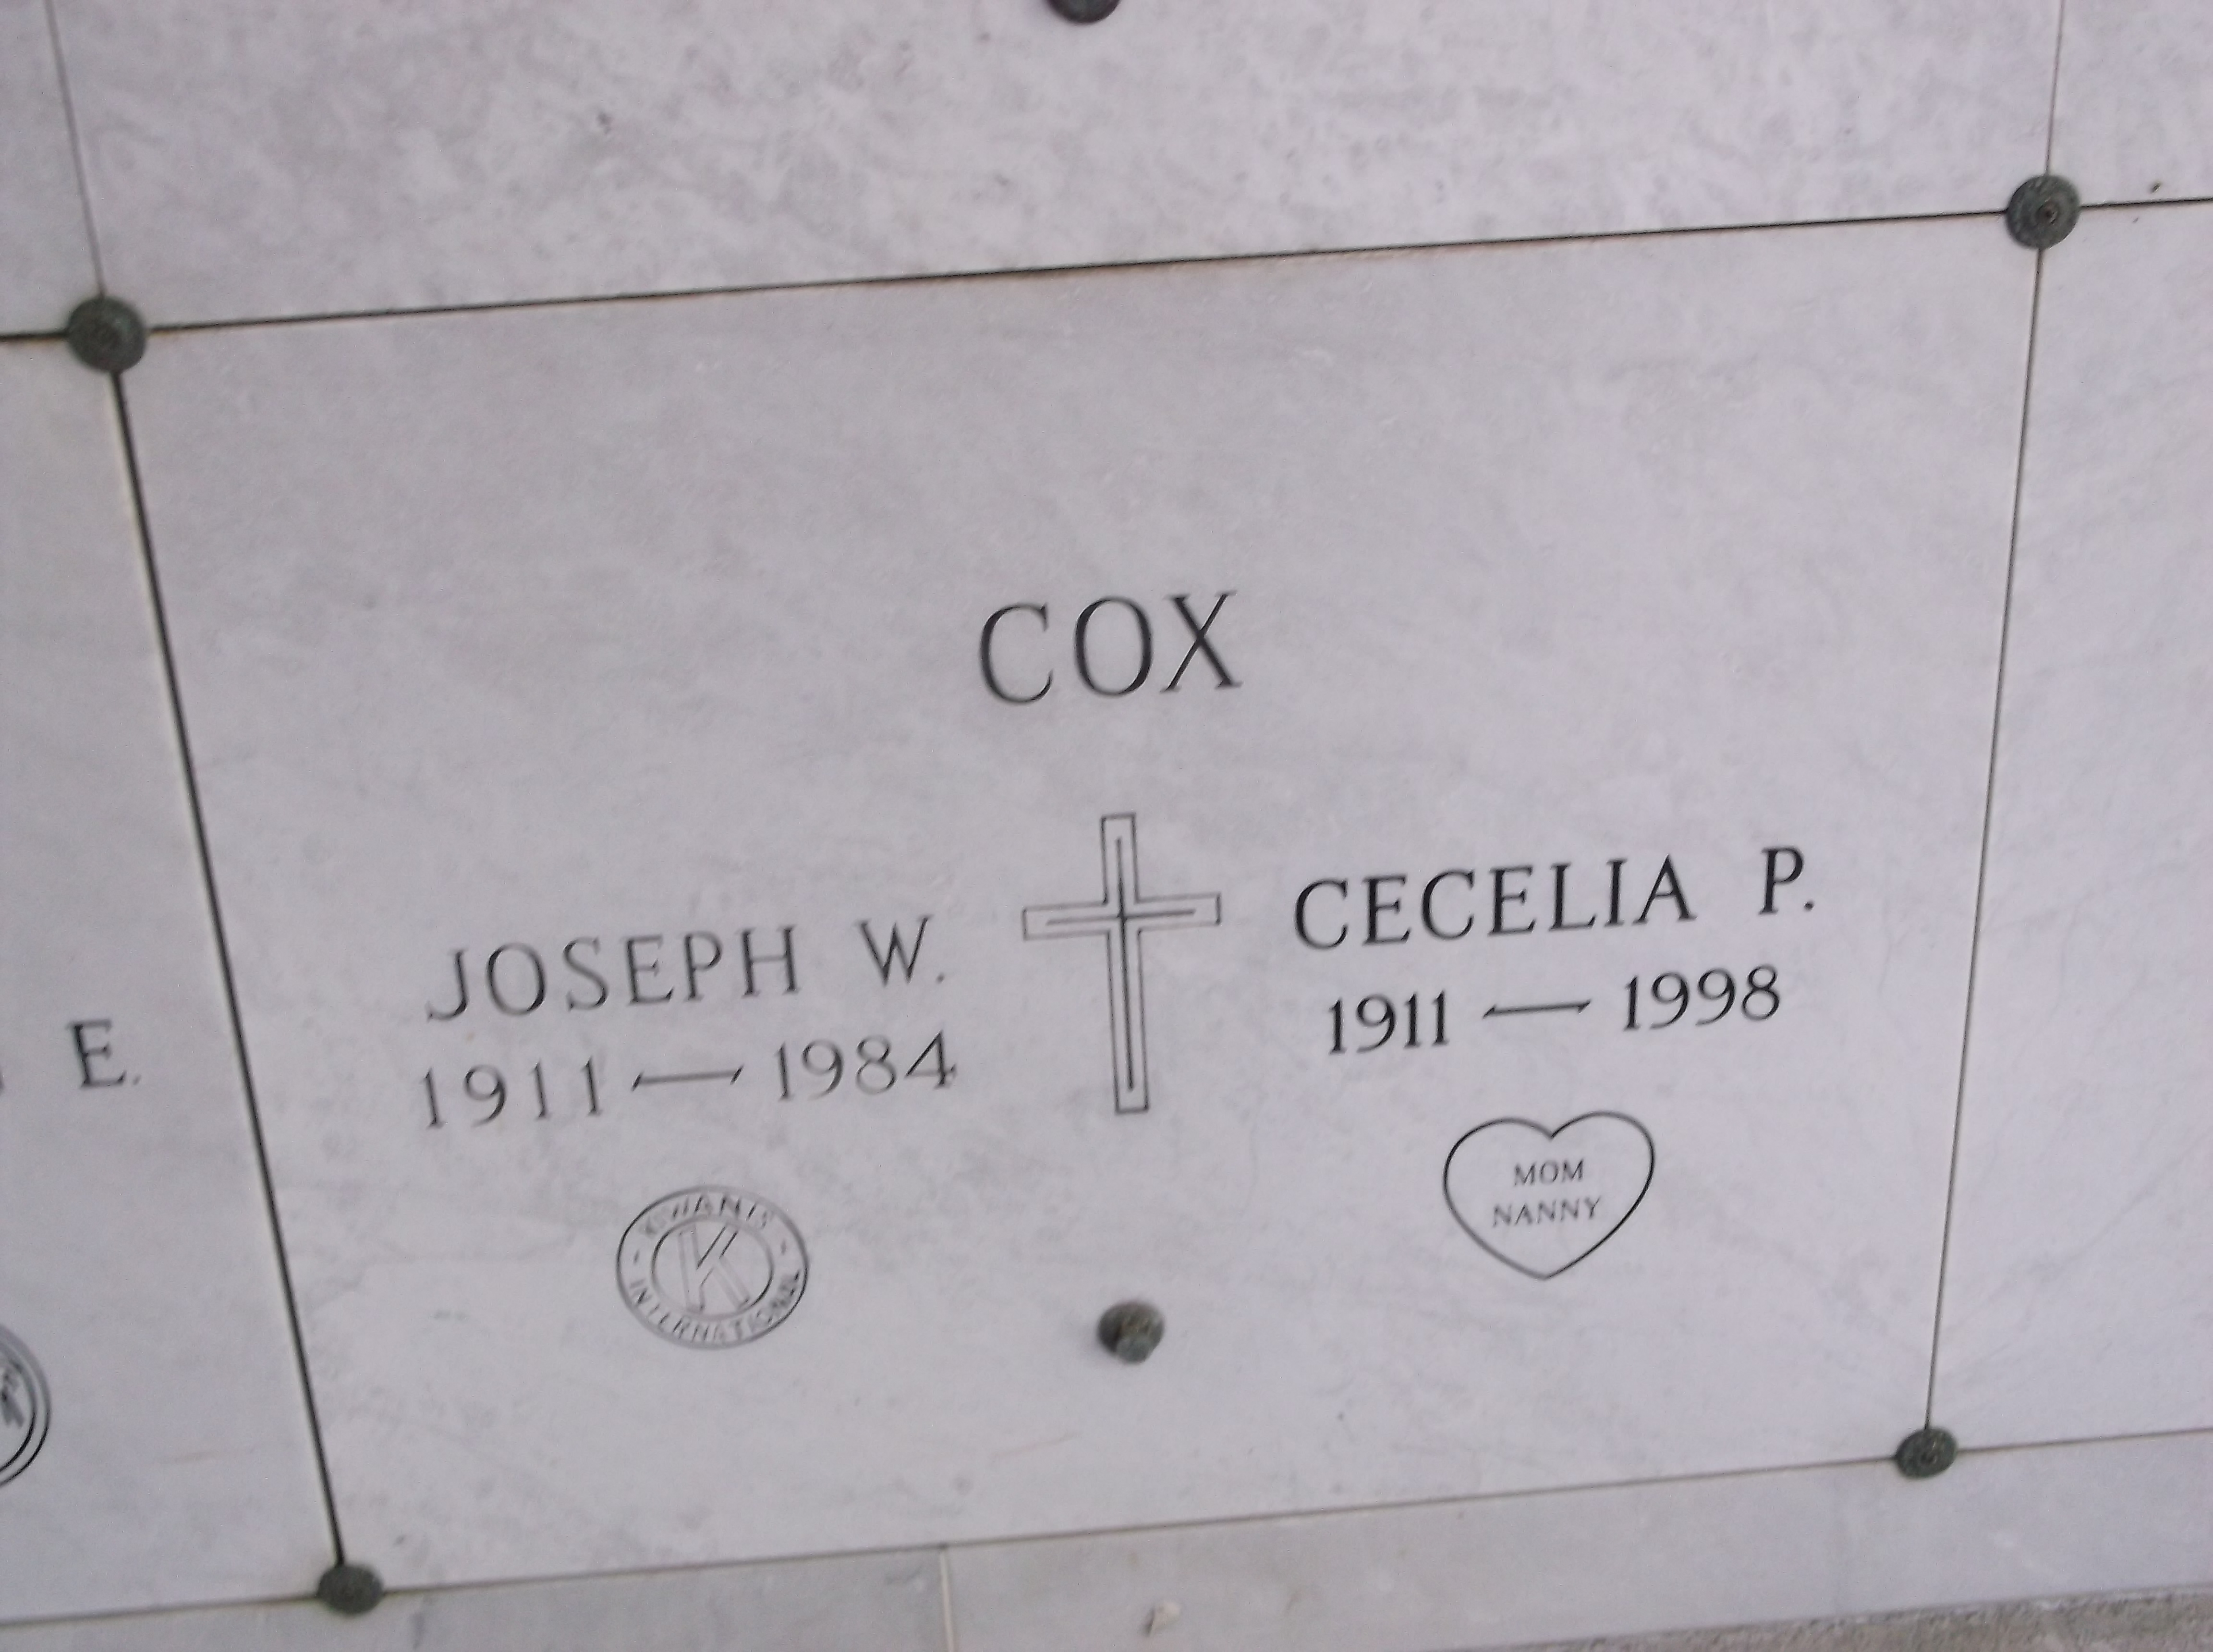 Cecelia P Cox